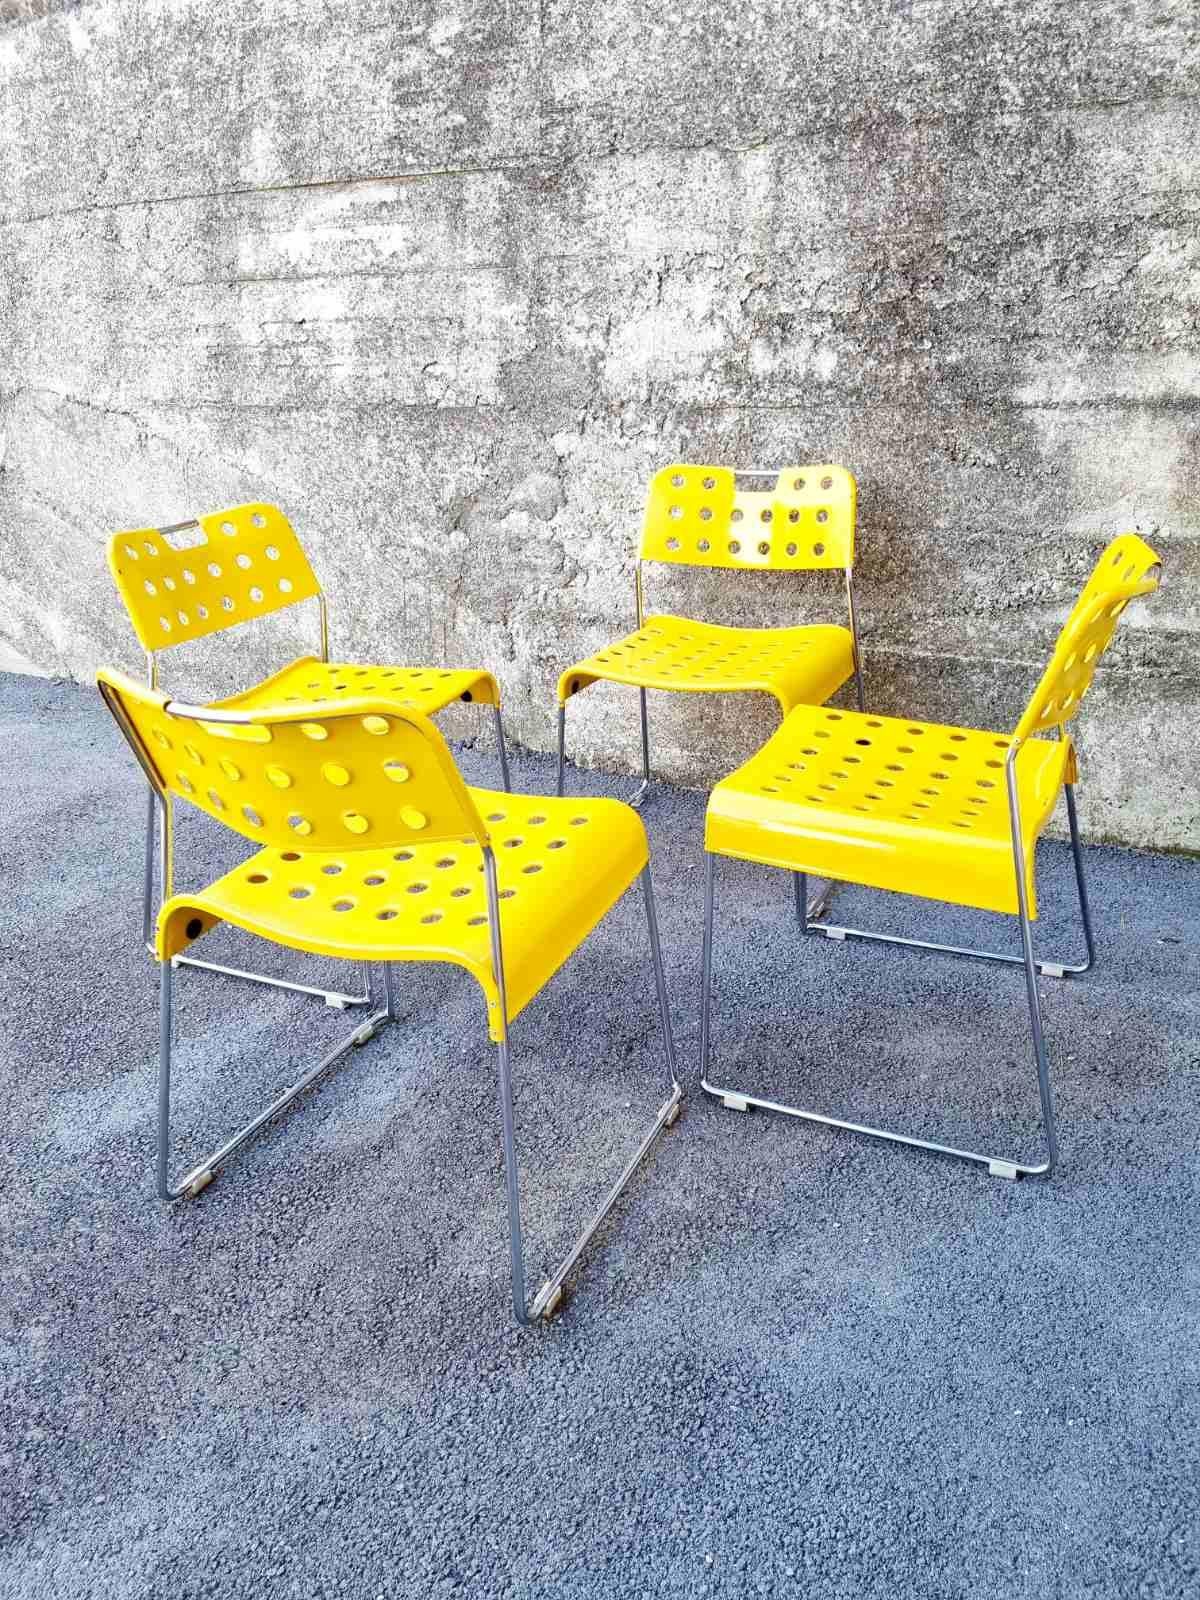 Ensemble de 4 chaises de salle à manger en métal modèle Omkstak conçu par Rodney Kinsman et produit par Bieffeplast.  Padoue dans les années 70.
Structure en tube d'acier chromé, assise et dossier en tôle d'acier moulée revêtue de résine époxy